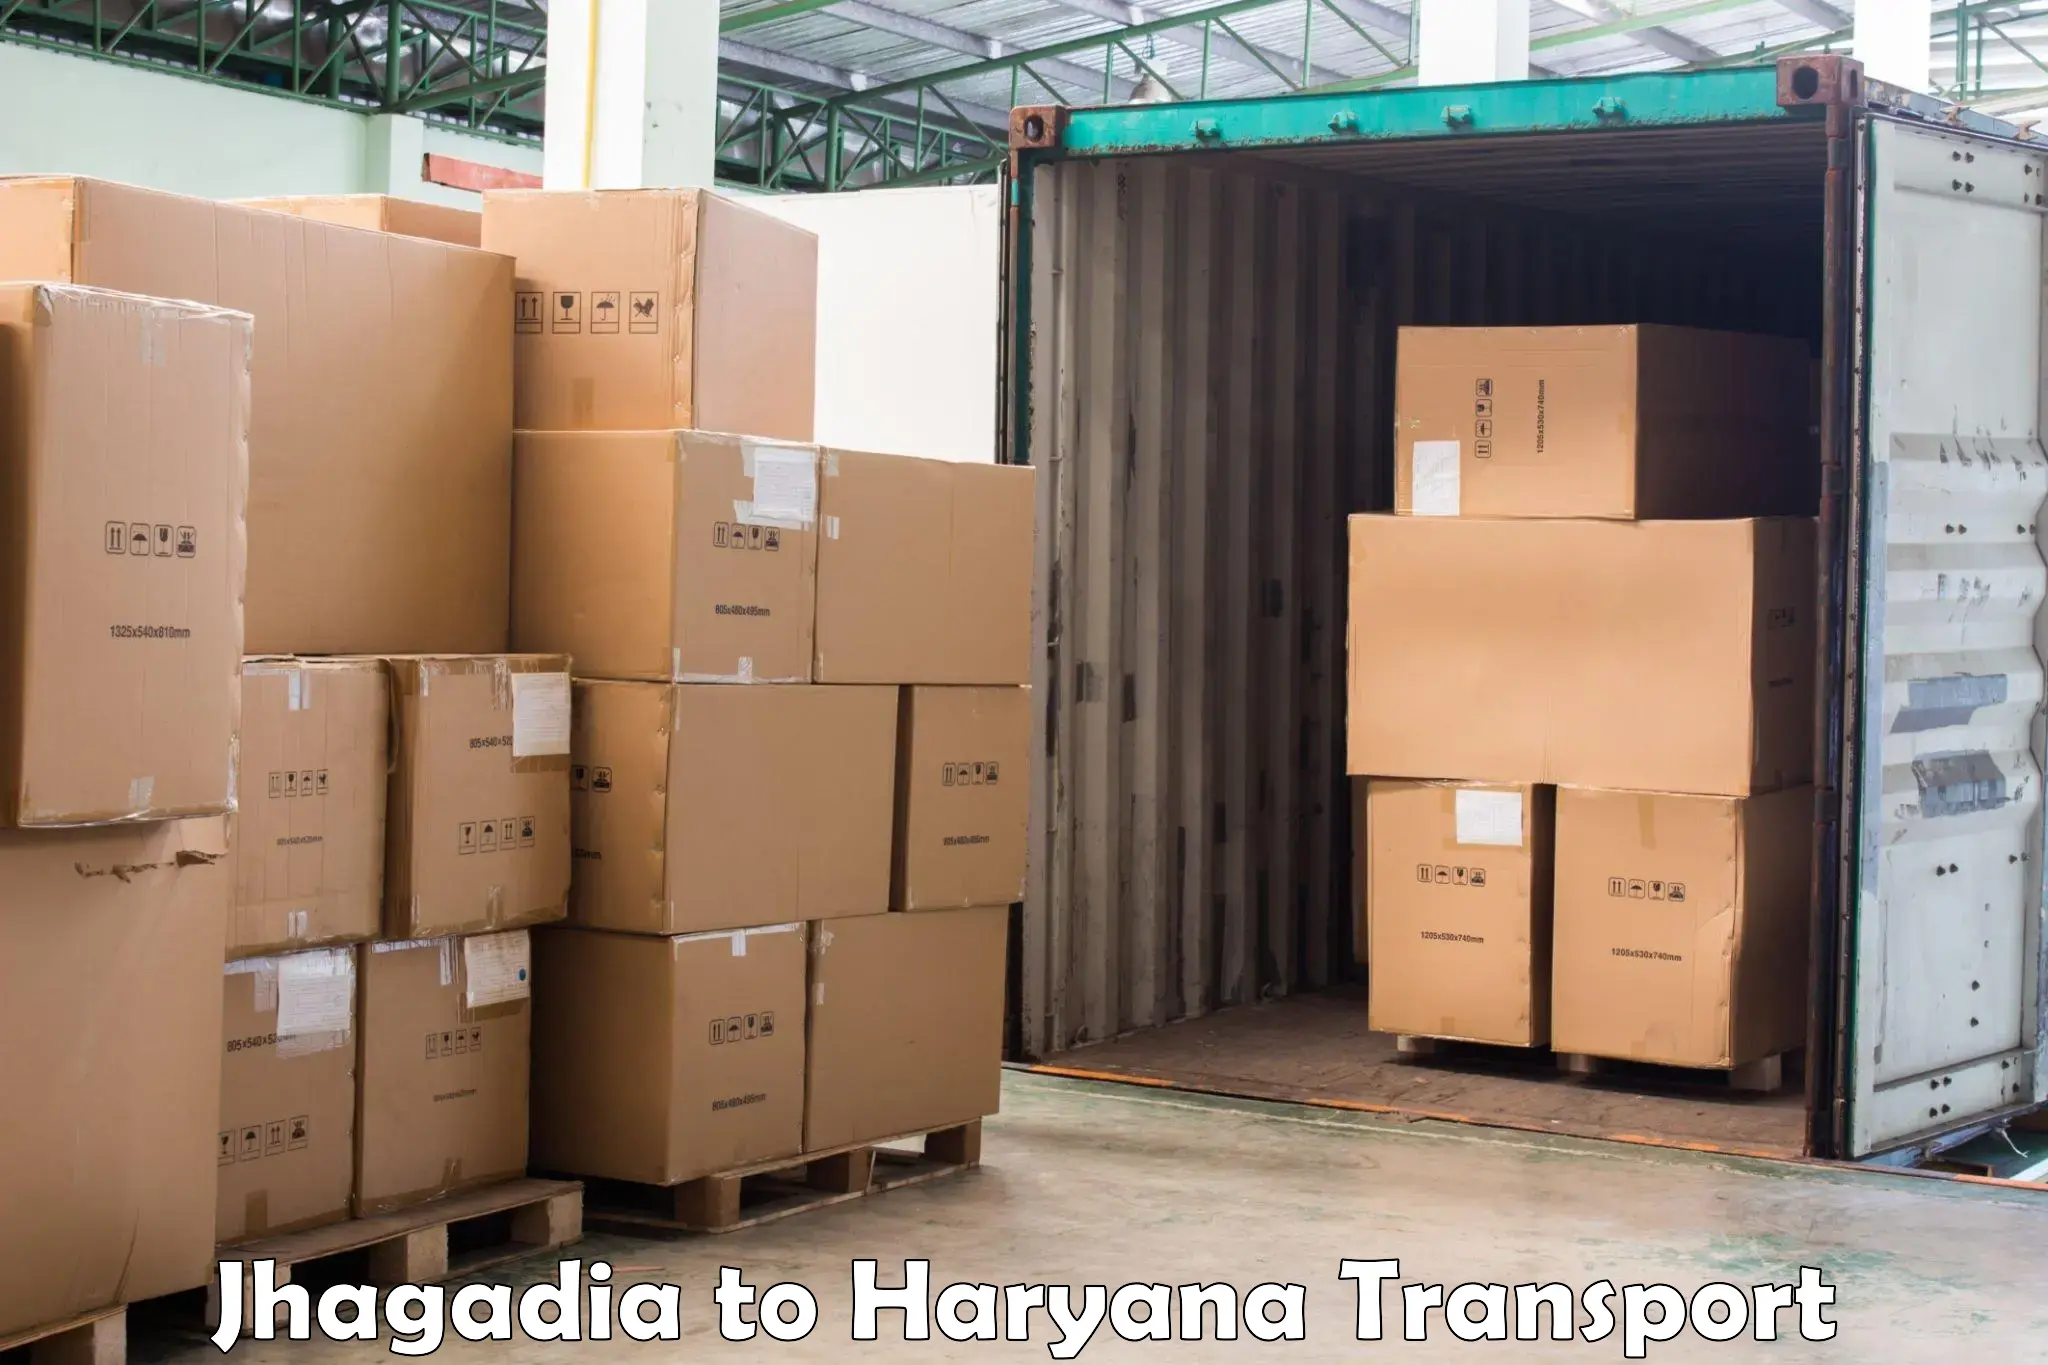 Commercial transport service Jhagadia to Haryana